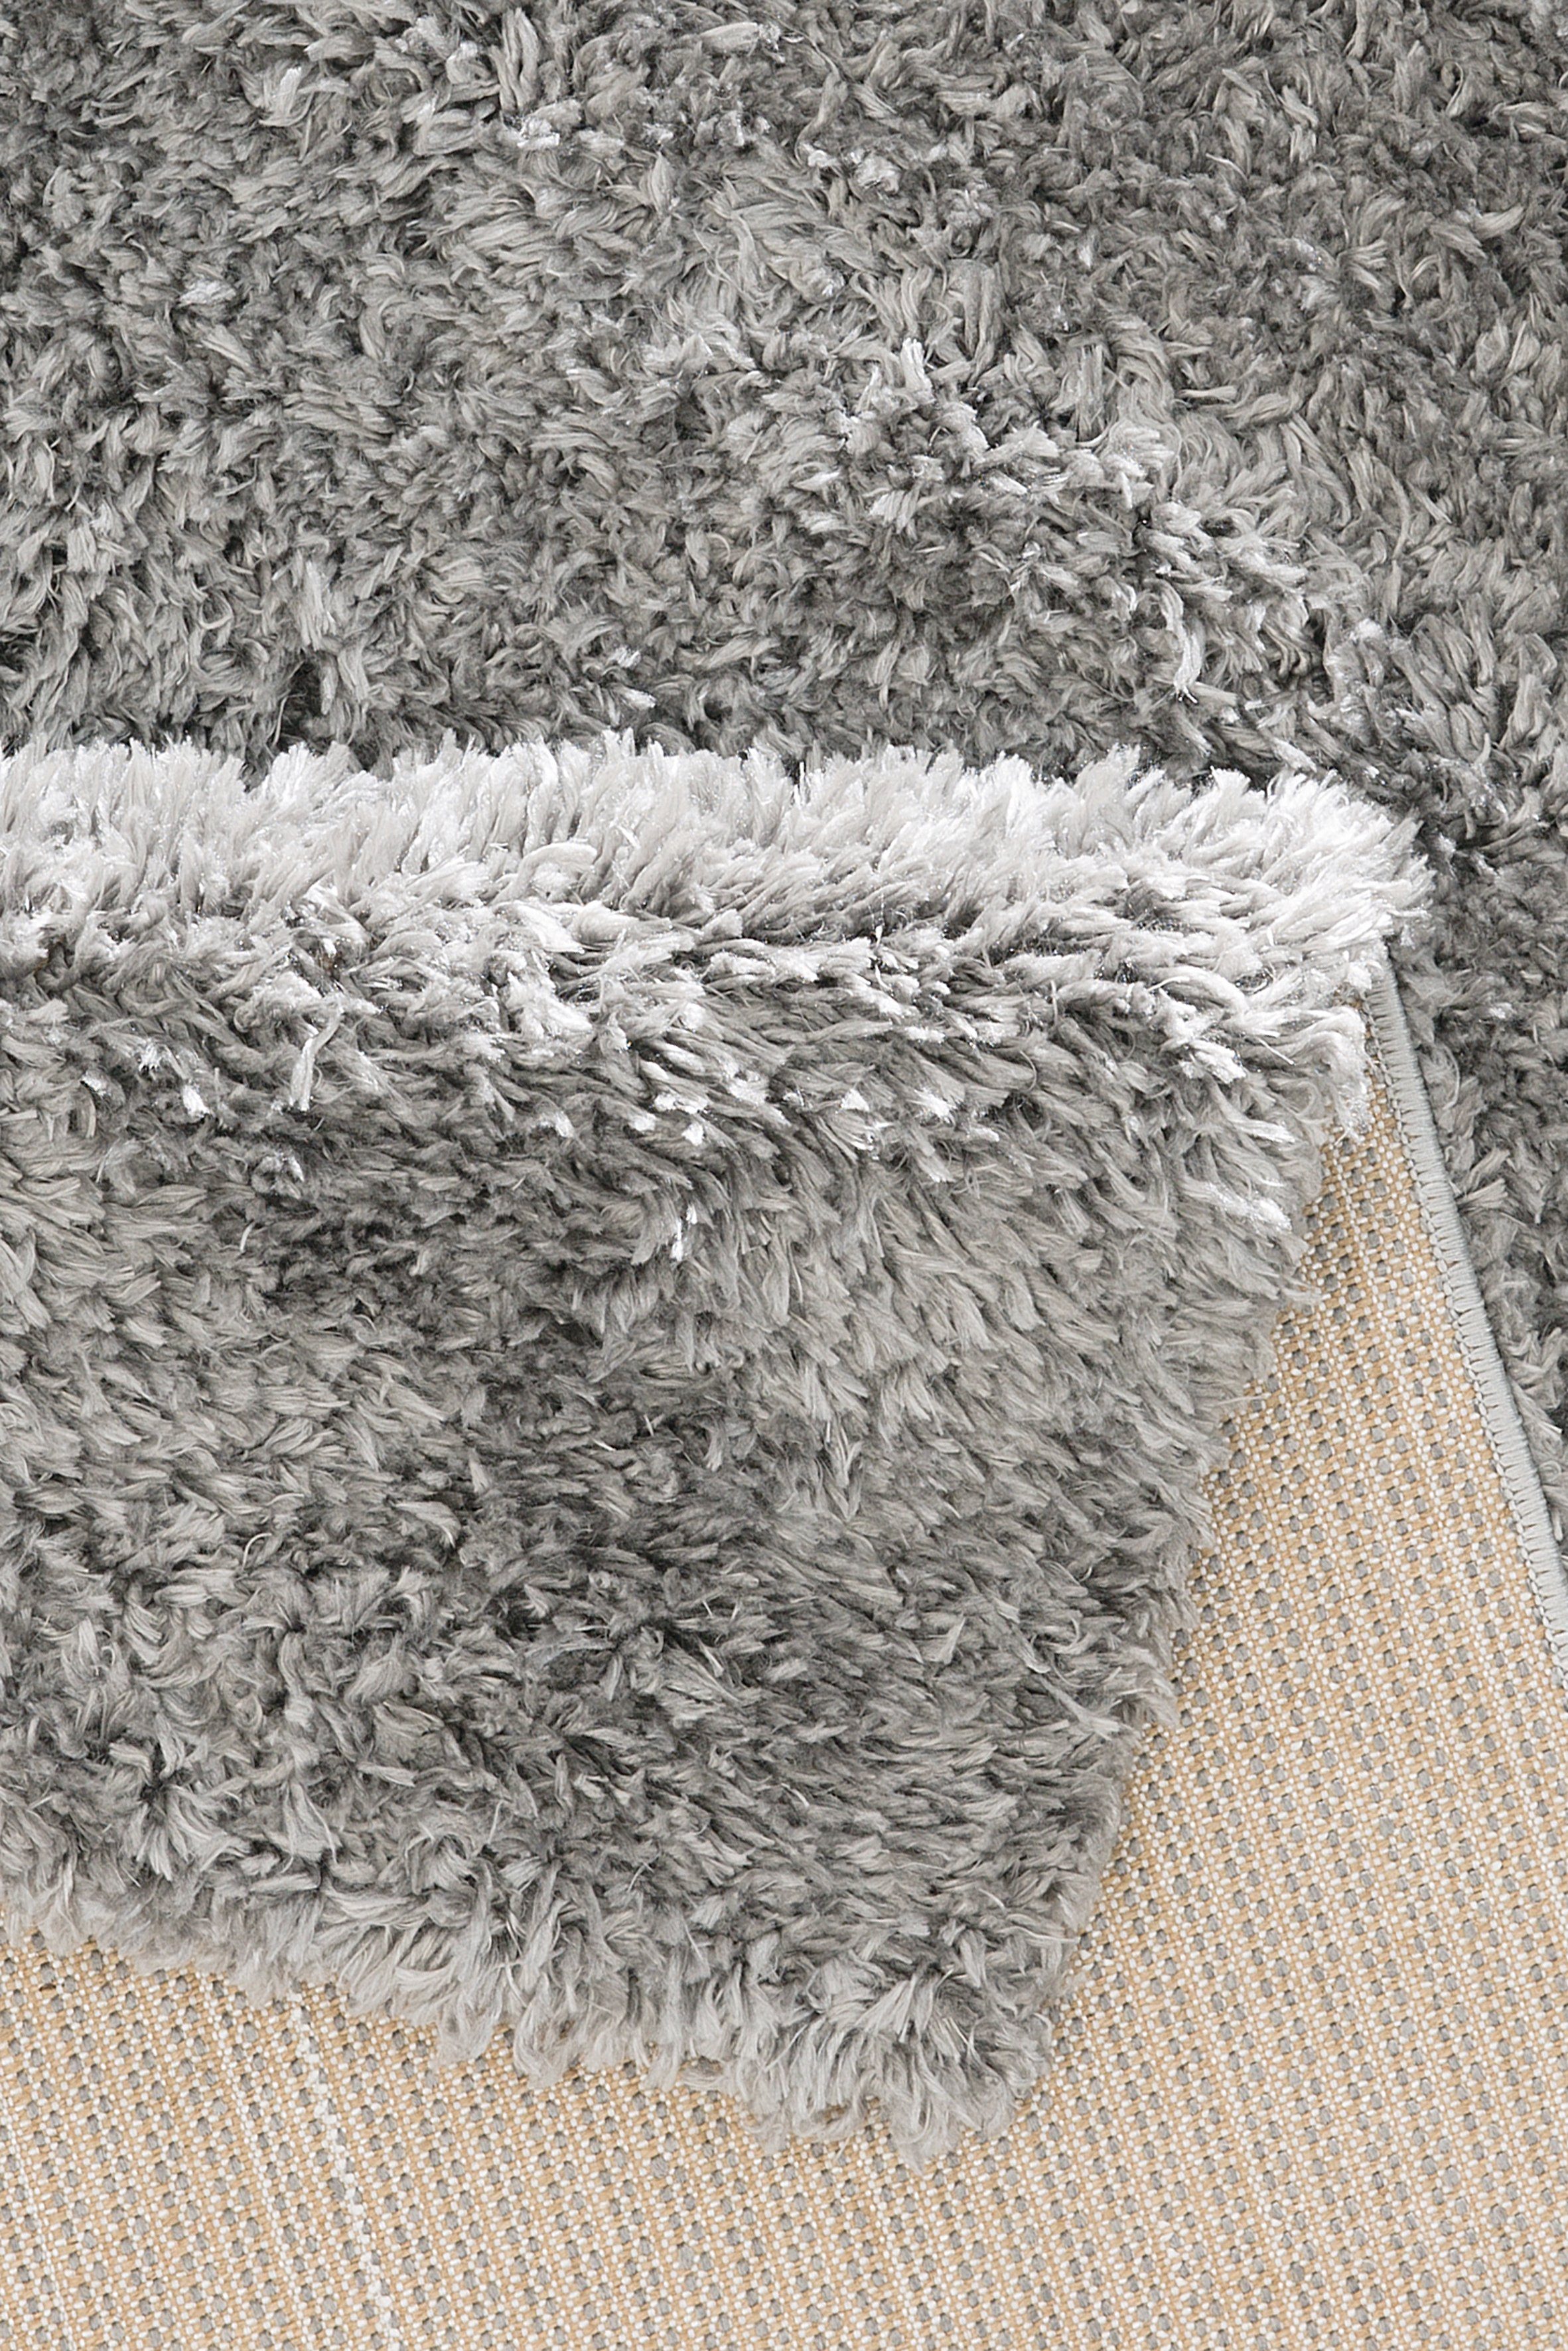 Teppich home, Shaggy my 50 grau mm, rechteckig, durch Boldo, weich Microfaser, Hochflor-Teppich besonders Höhe: